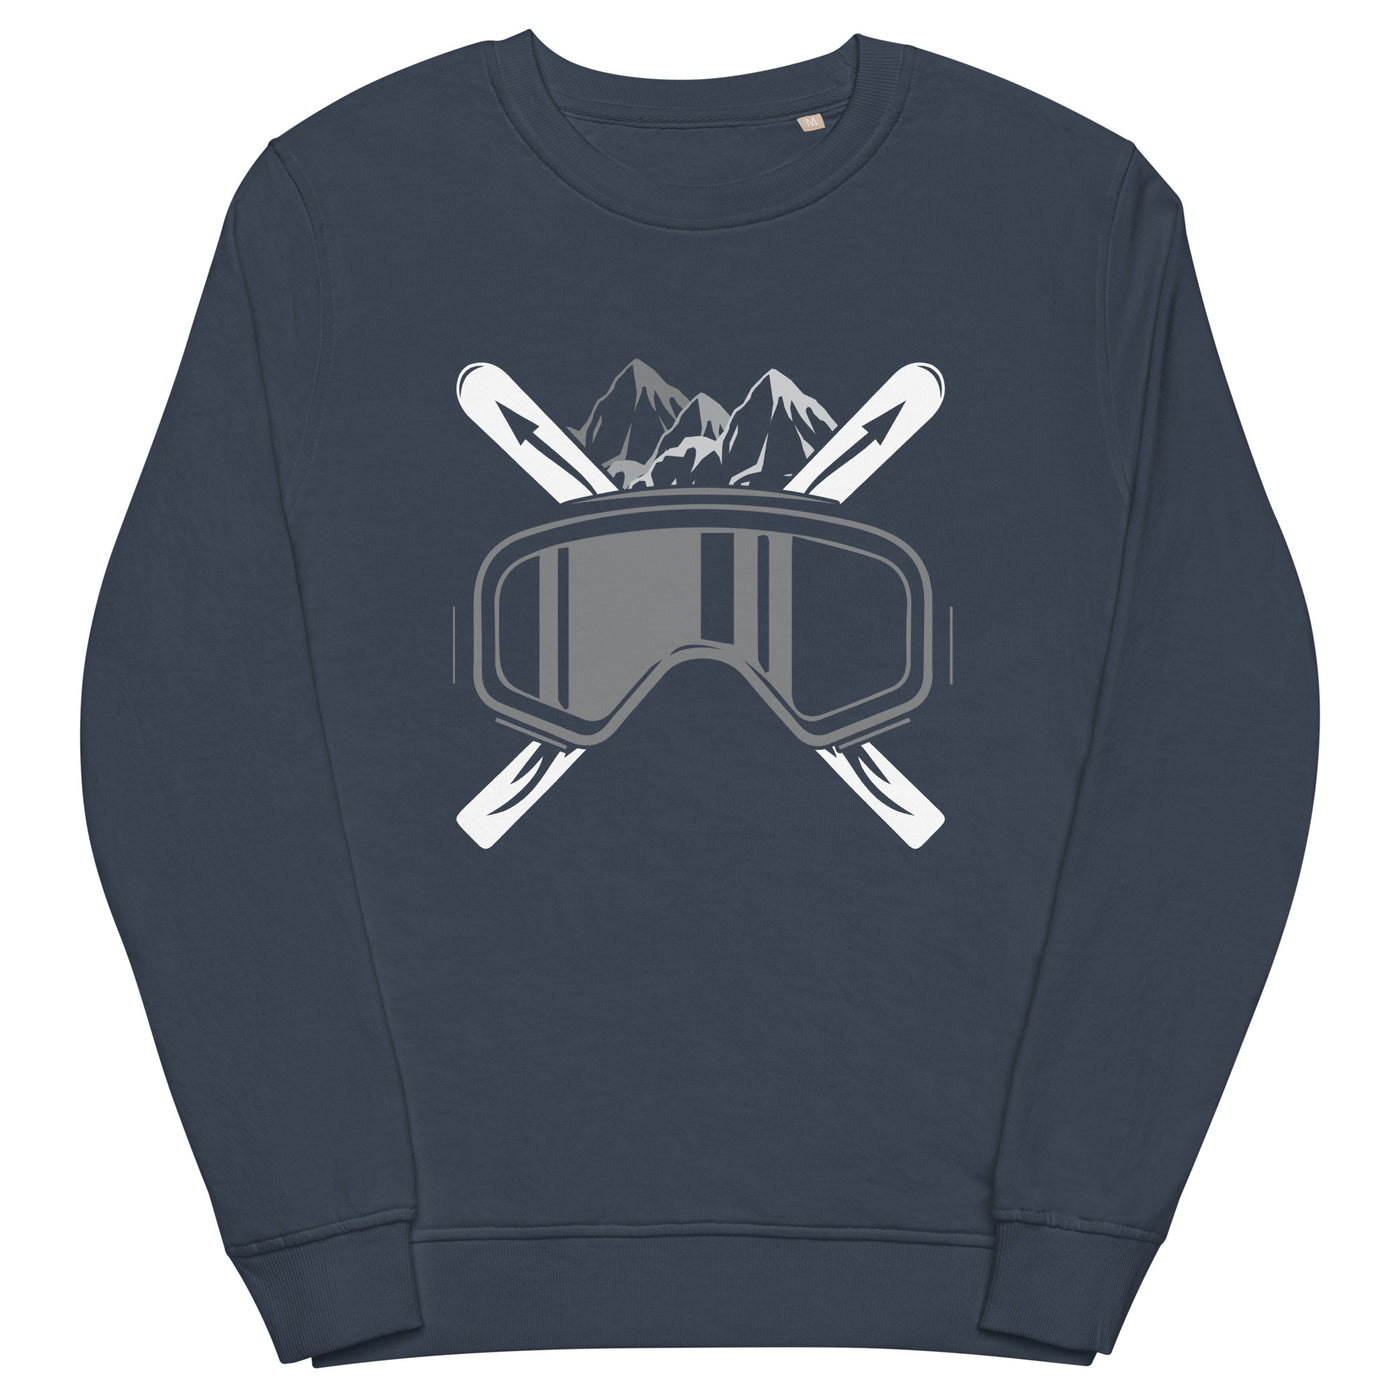 Schifoan - Unisex Premium Organic Sweatshirt klettern ski xxx yyy zzz French Navy